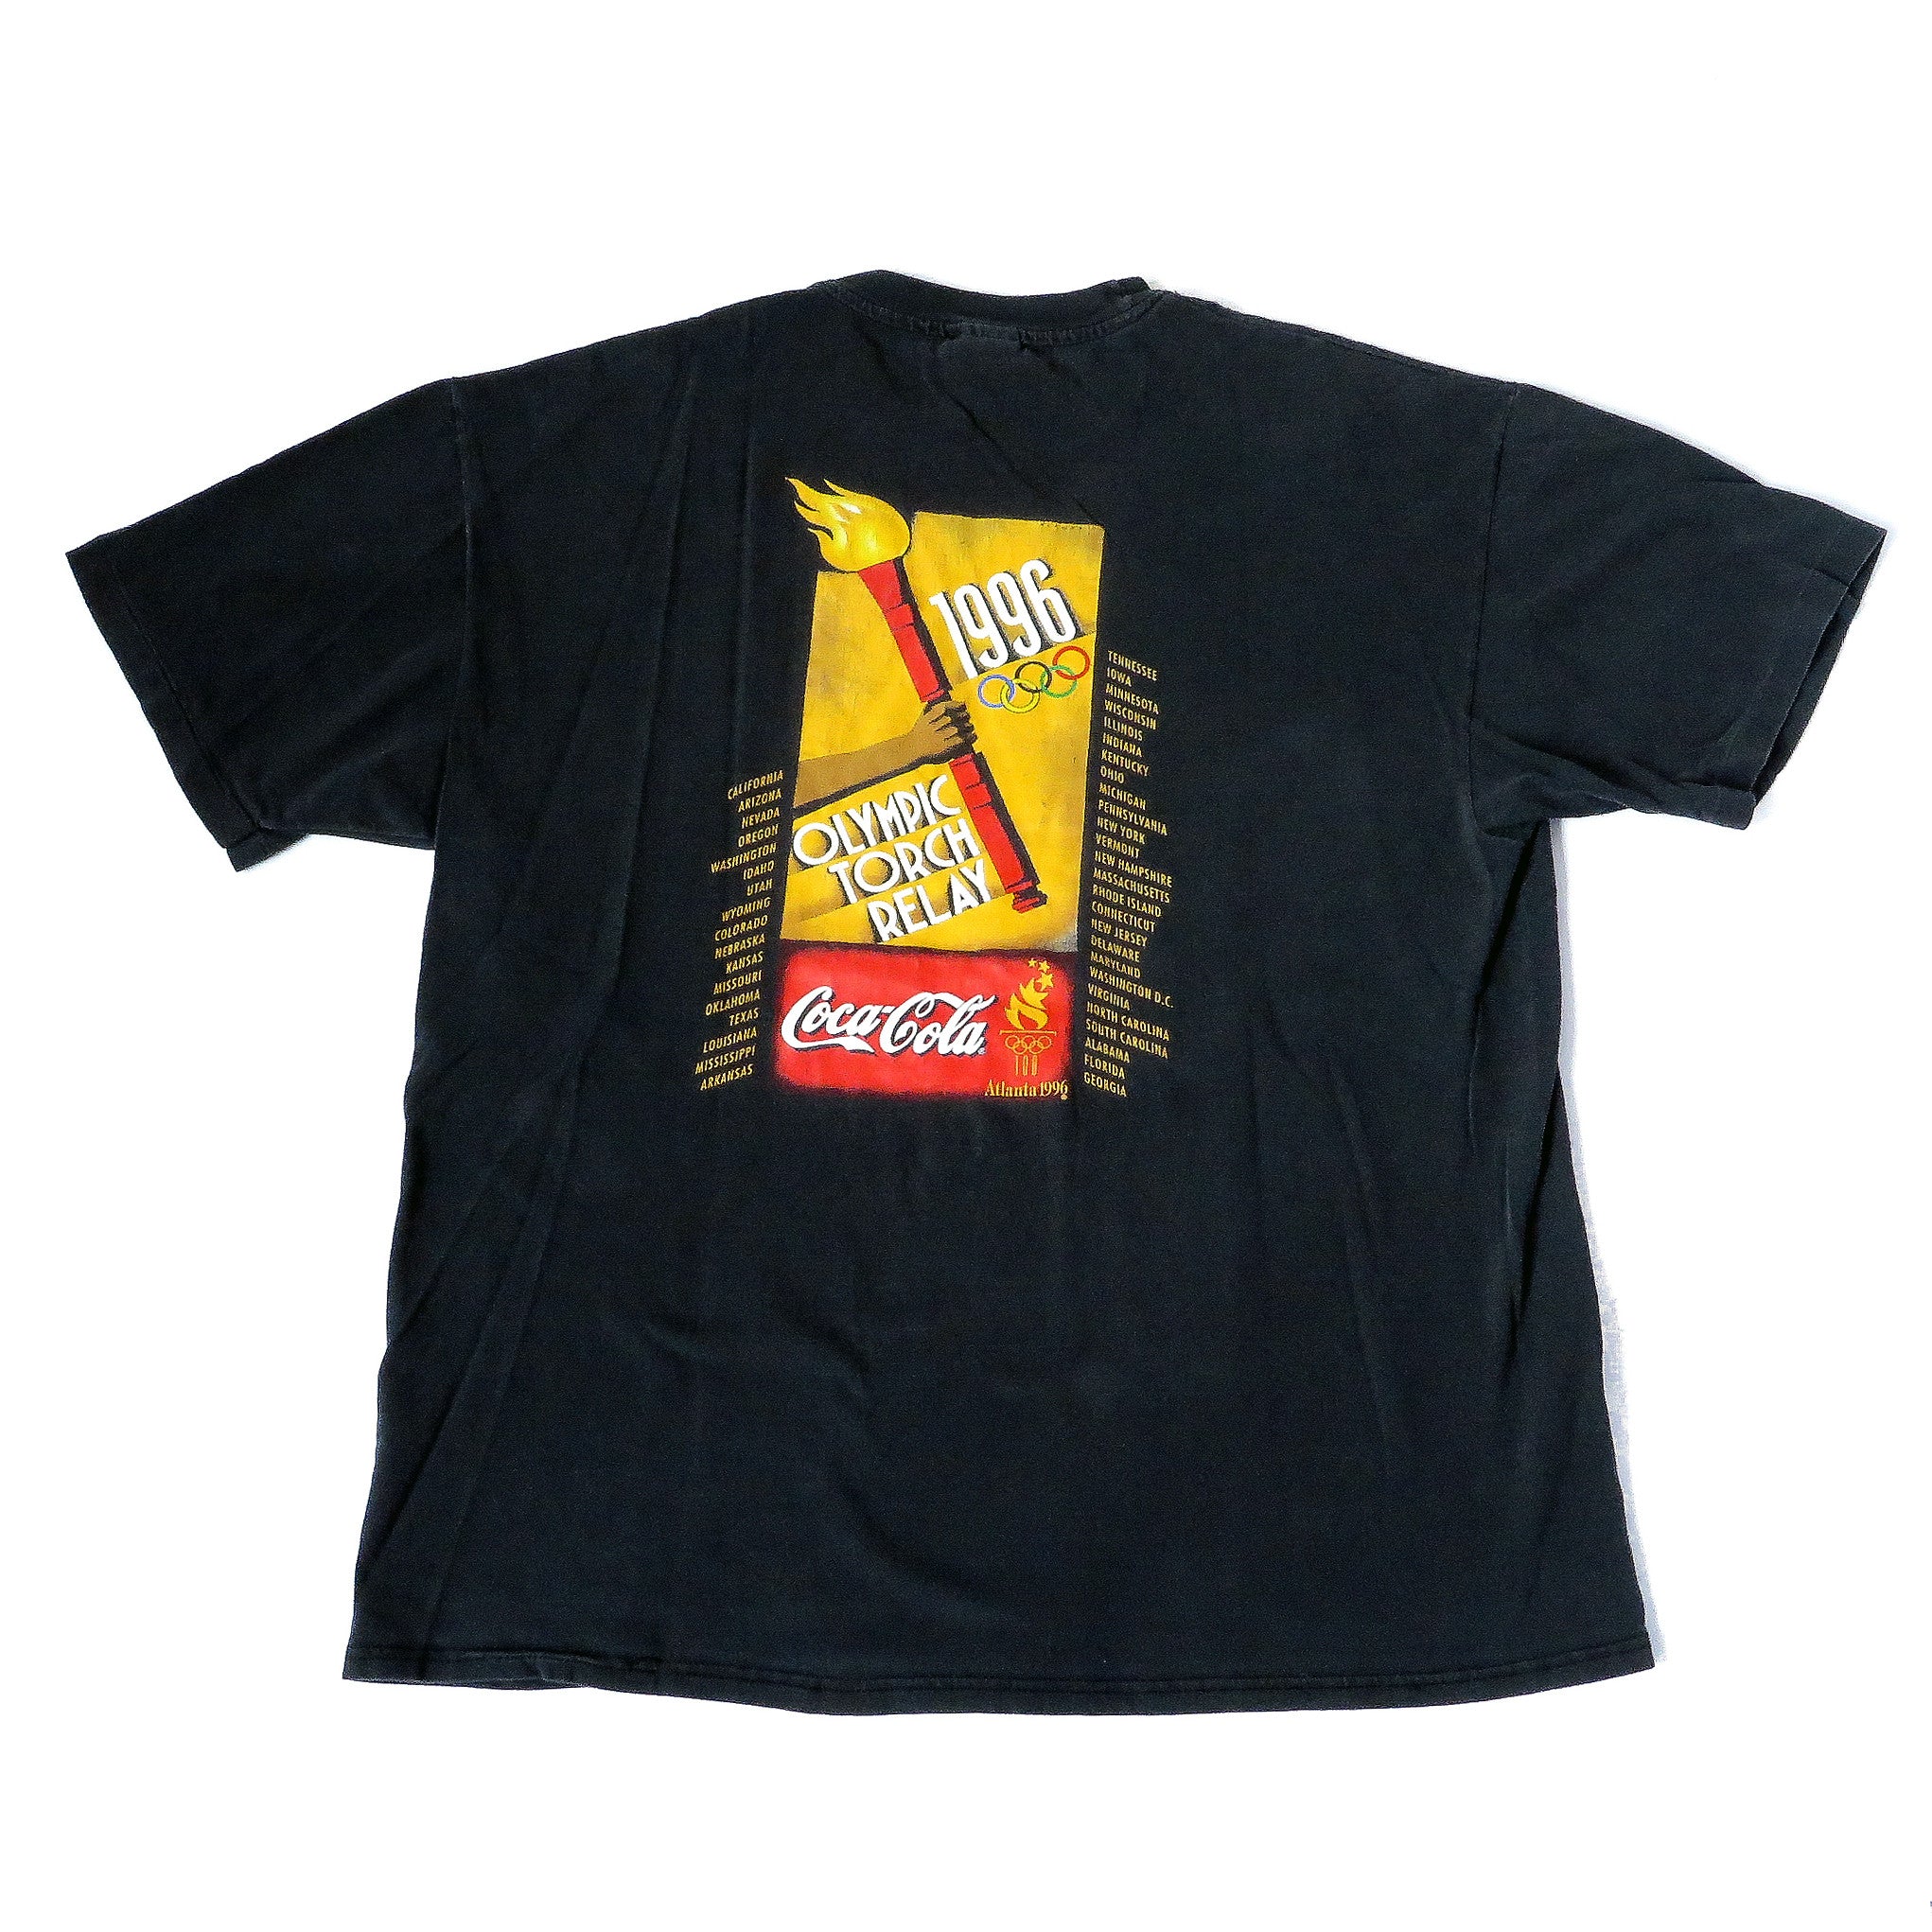 Vintage Atlanta 1996 Coca-Cola T-Shirt Sz XL